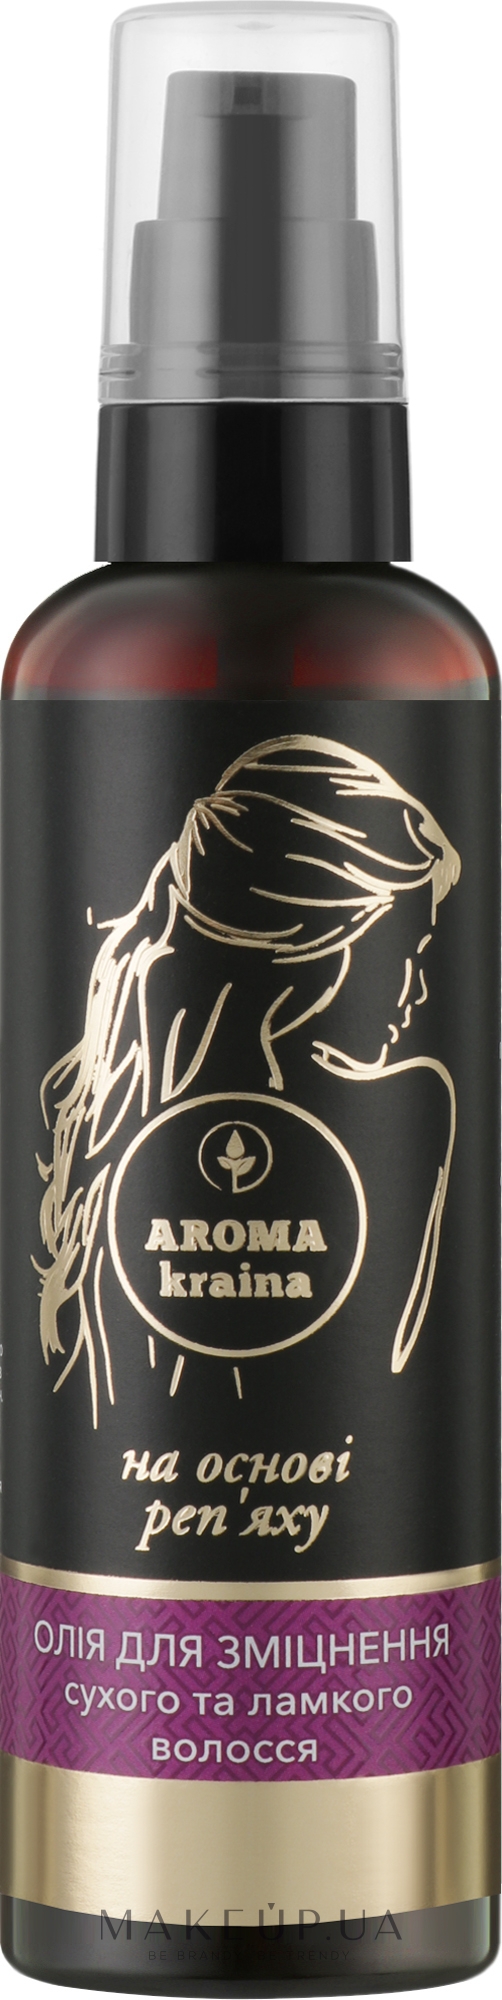 Олія для зміцнення сухого і ламкого волосся - Aroma kraina — фото 100ml